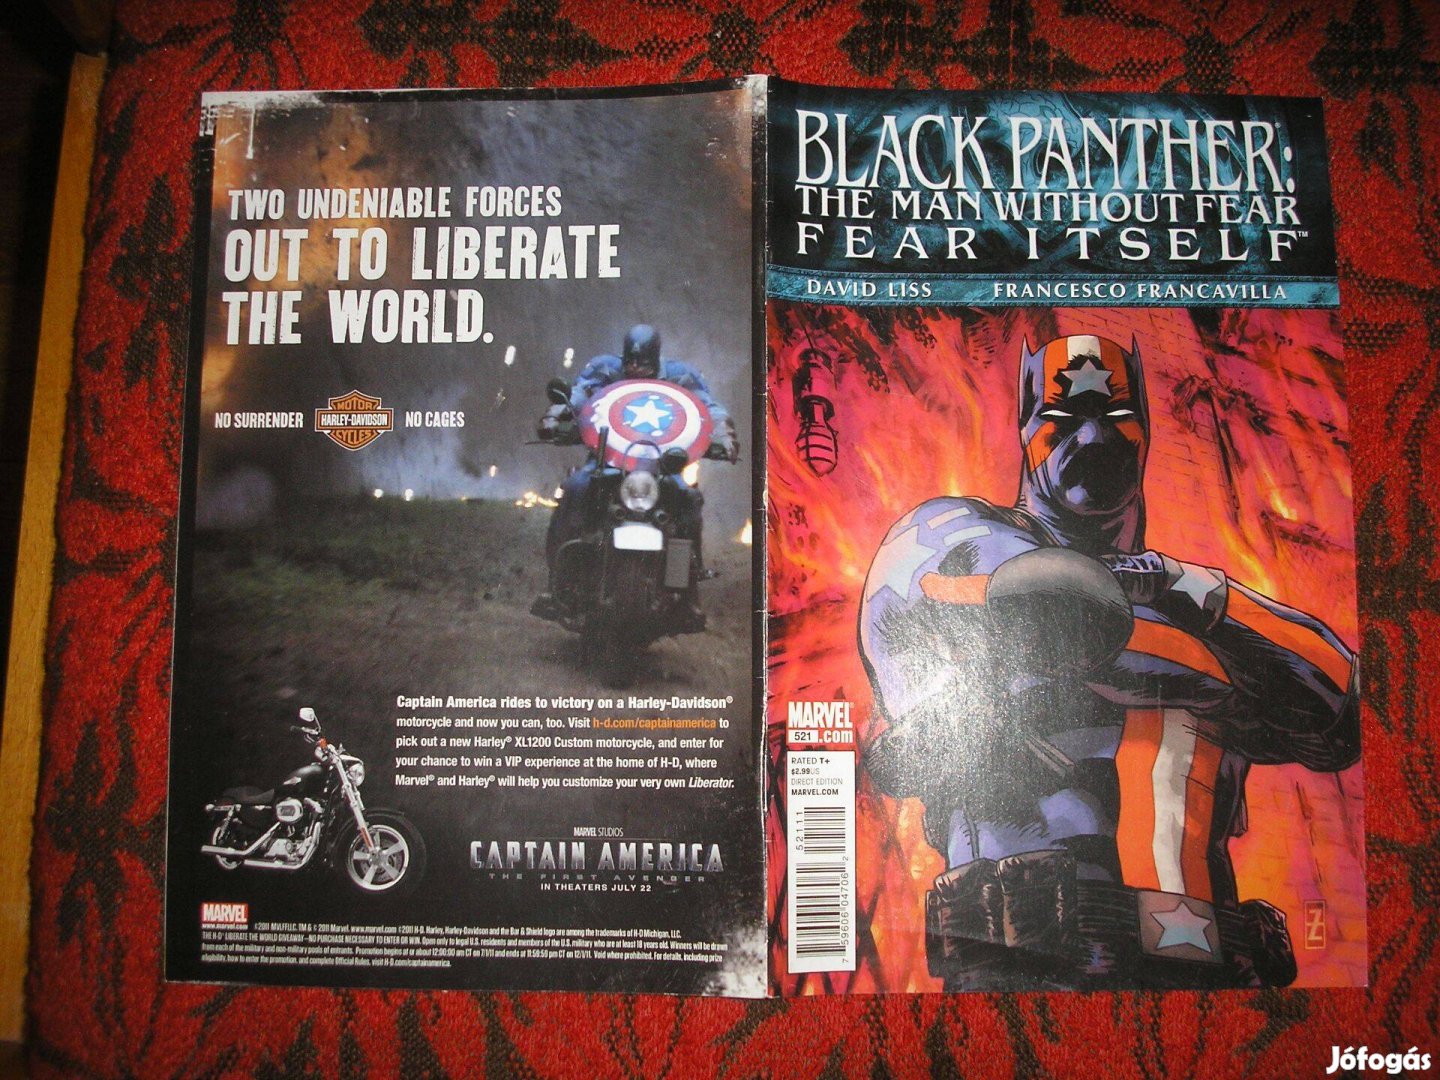 Black Panther: The man without fear Marvel képregény 521. száma eladó!